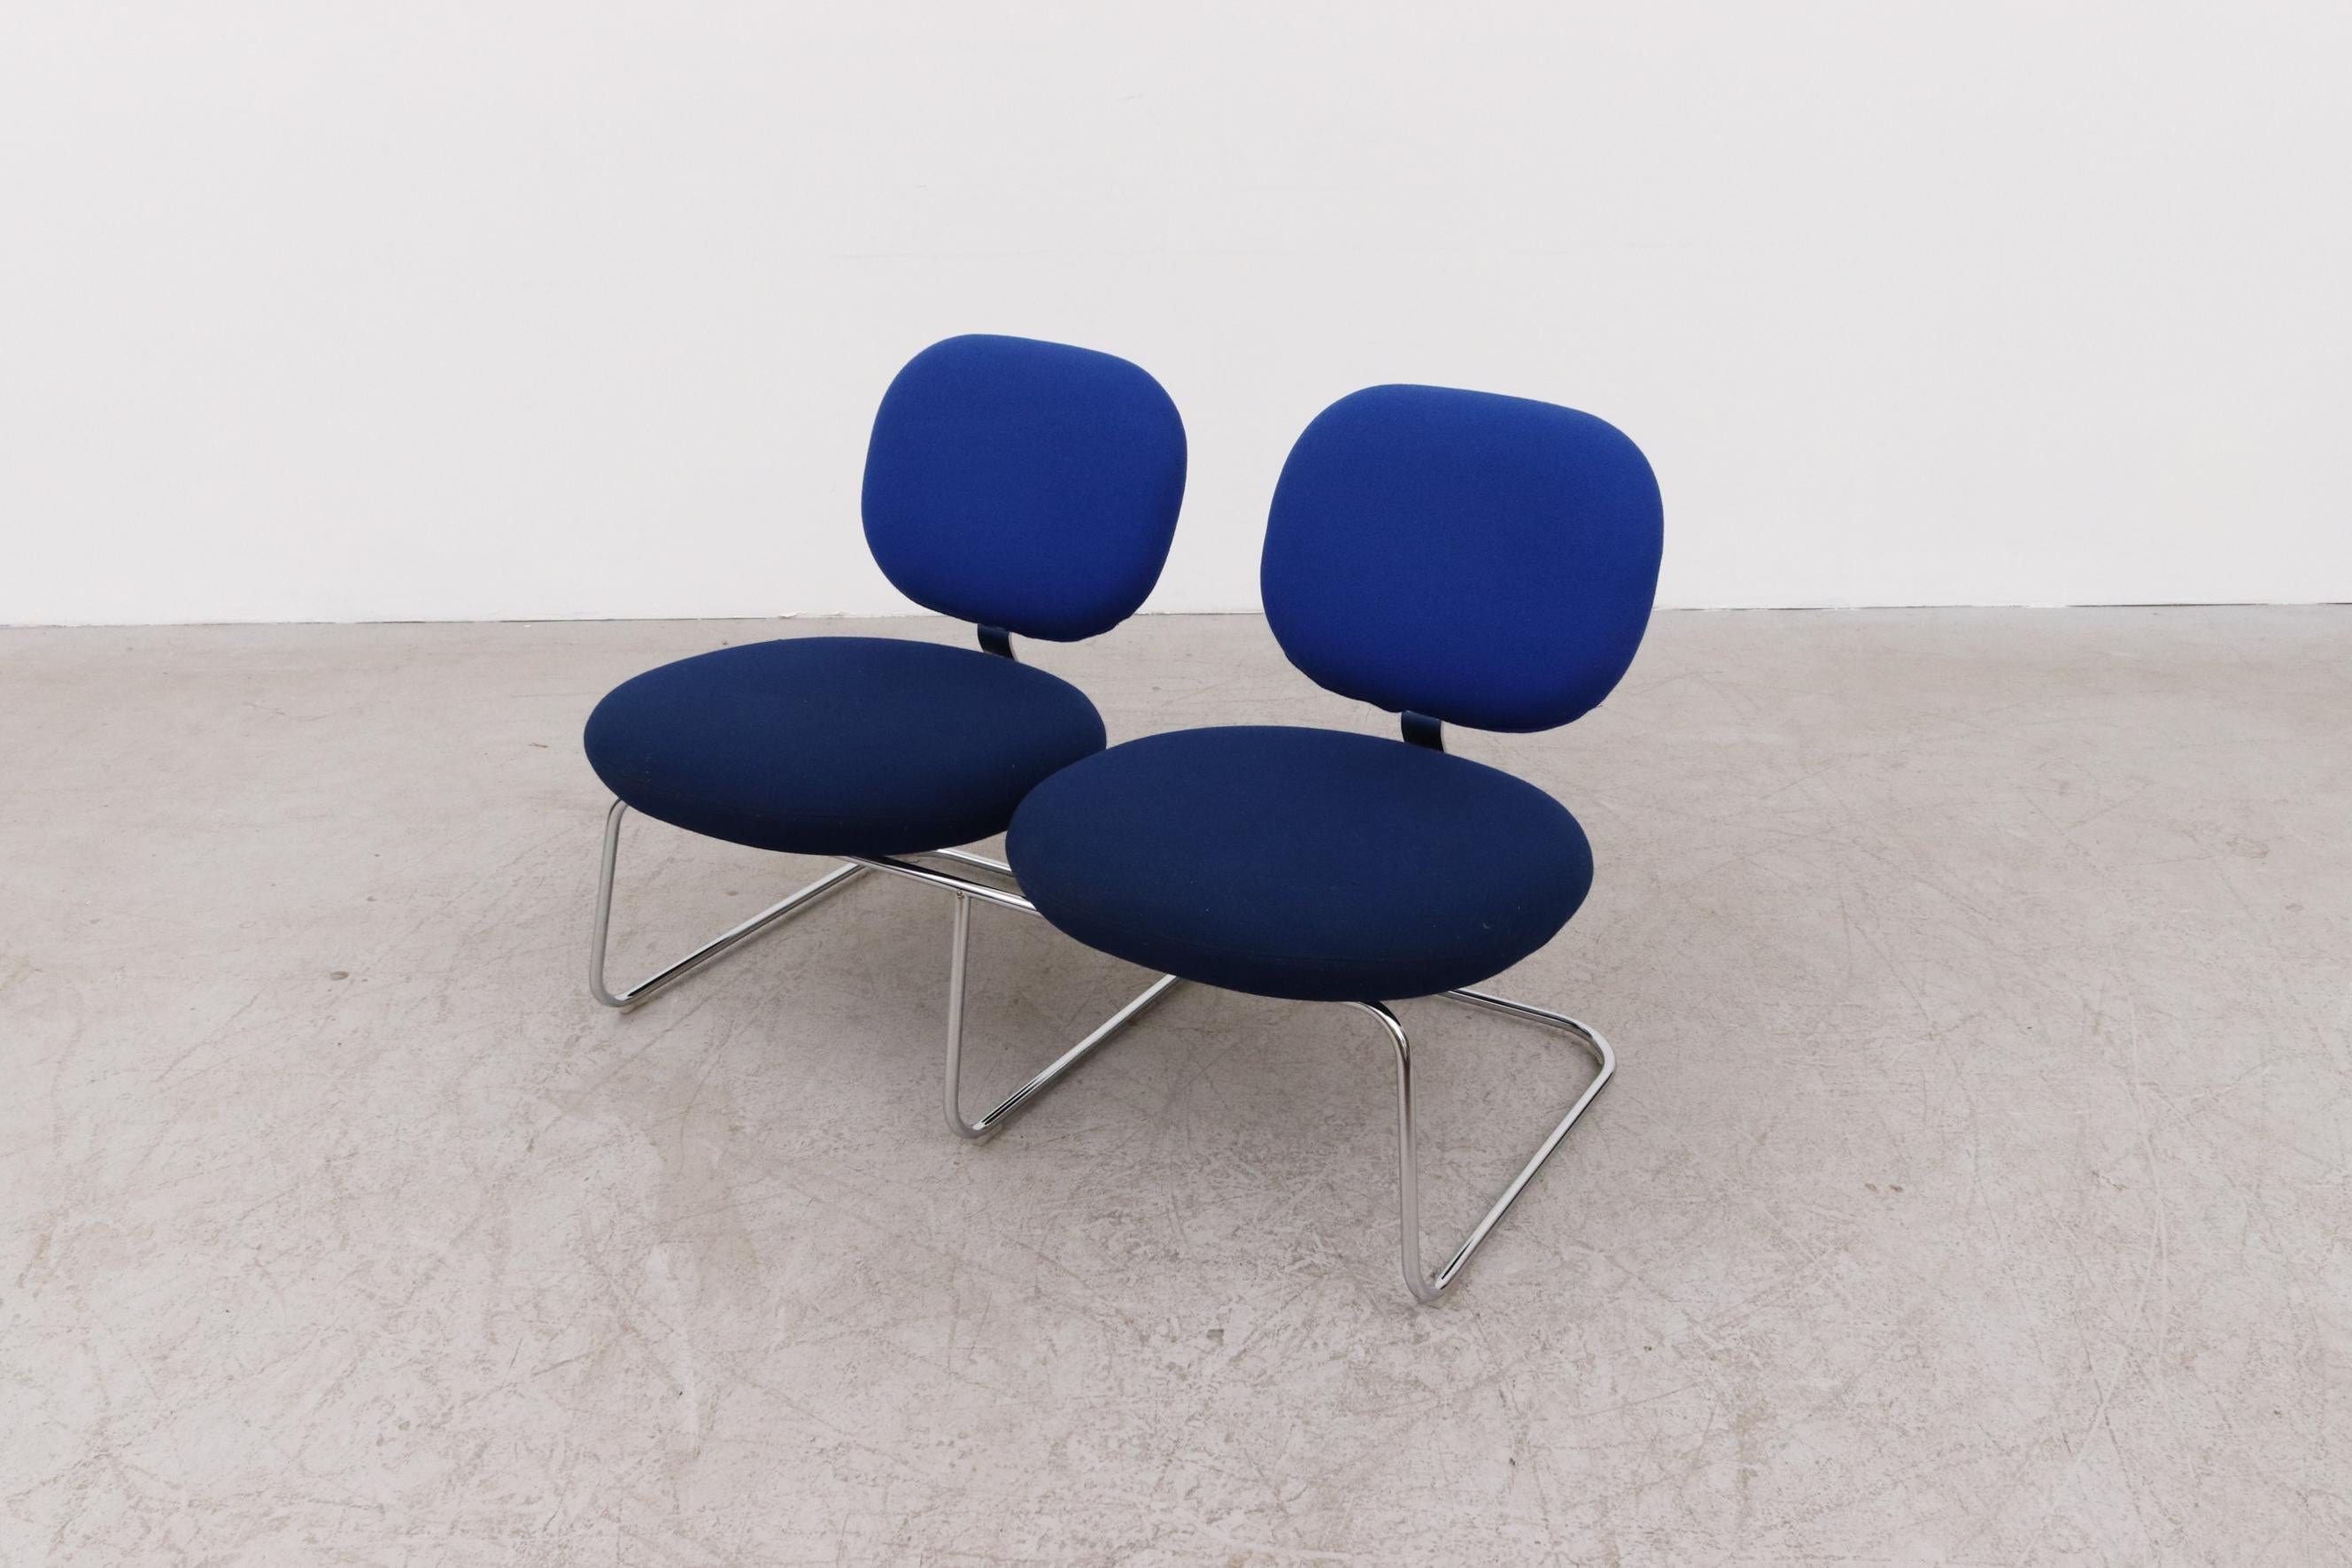 Upholstery Jasper Morrison 2-Seat Blue Two-Toned 